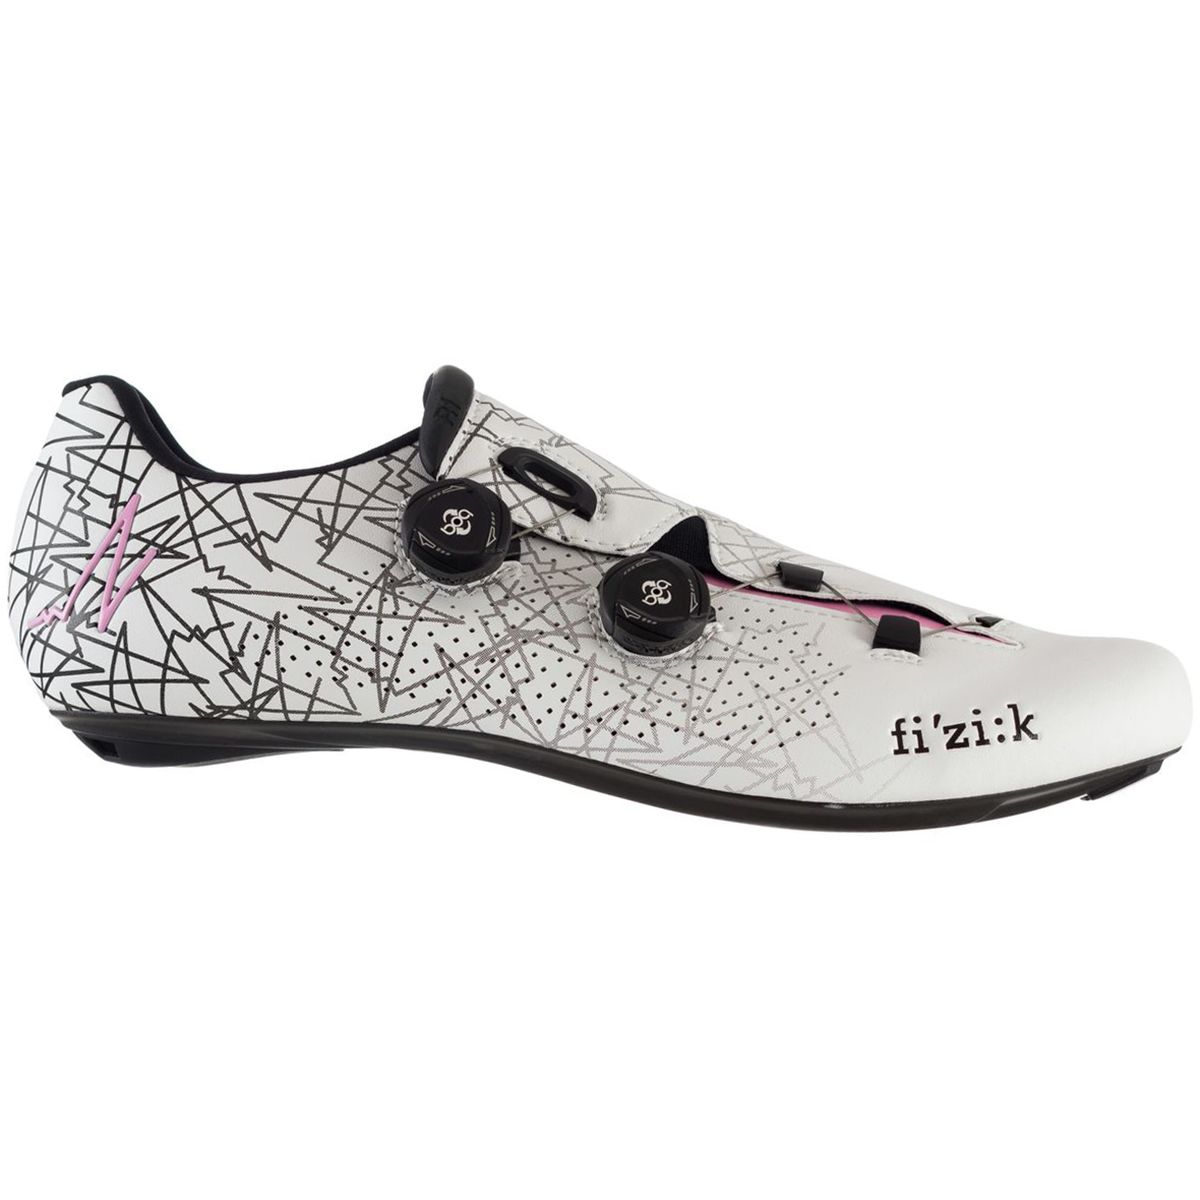 Fi'zik R1B Uomo Boa Limited Edition Giro Cycling Shoe Men's